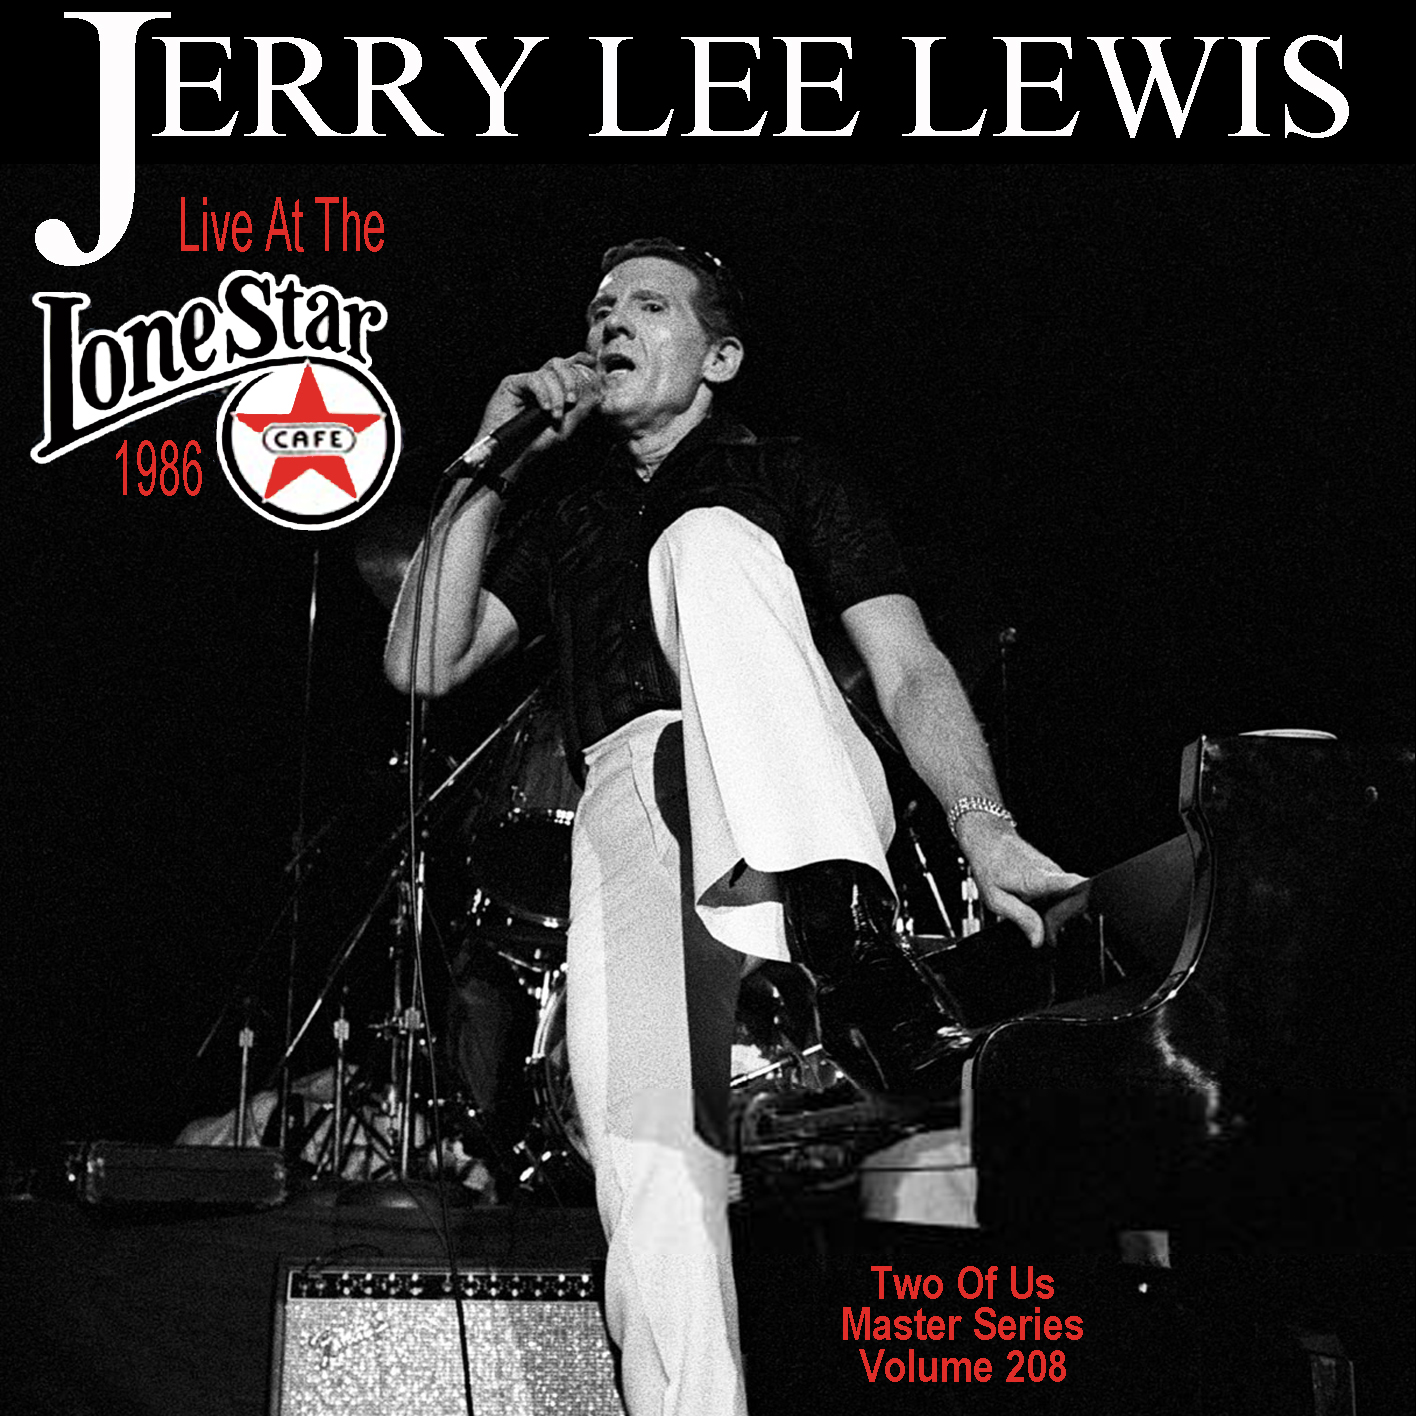 JerryLeeLewis1986-04-28LoneStarCafeNYC (4).jpg